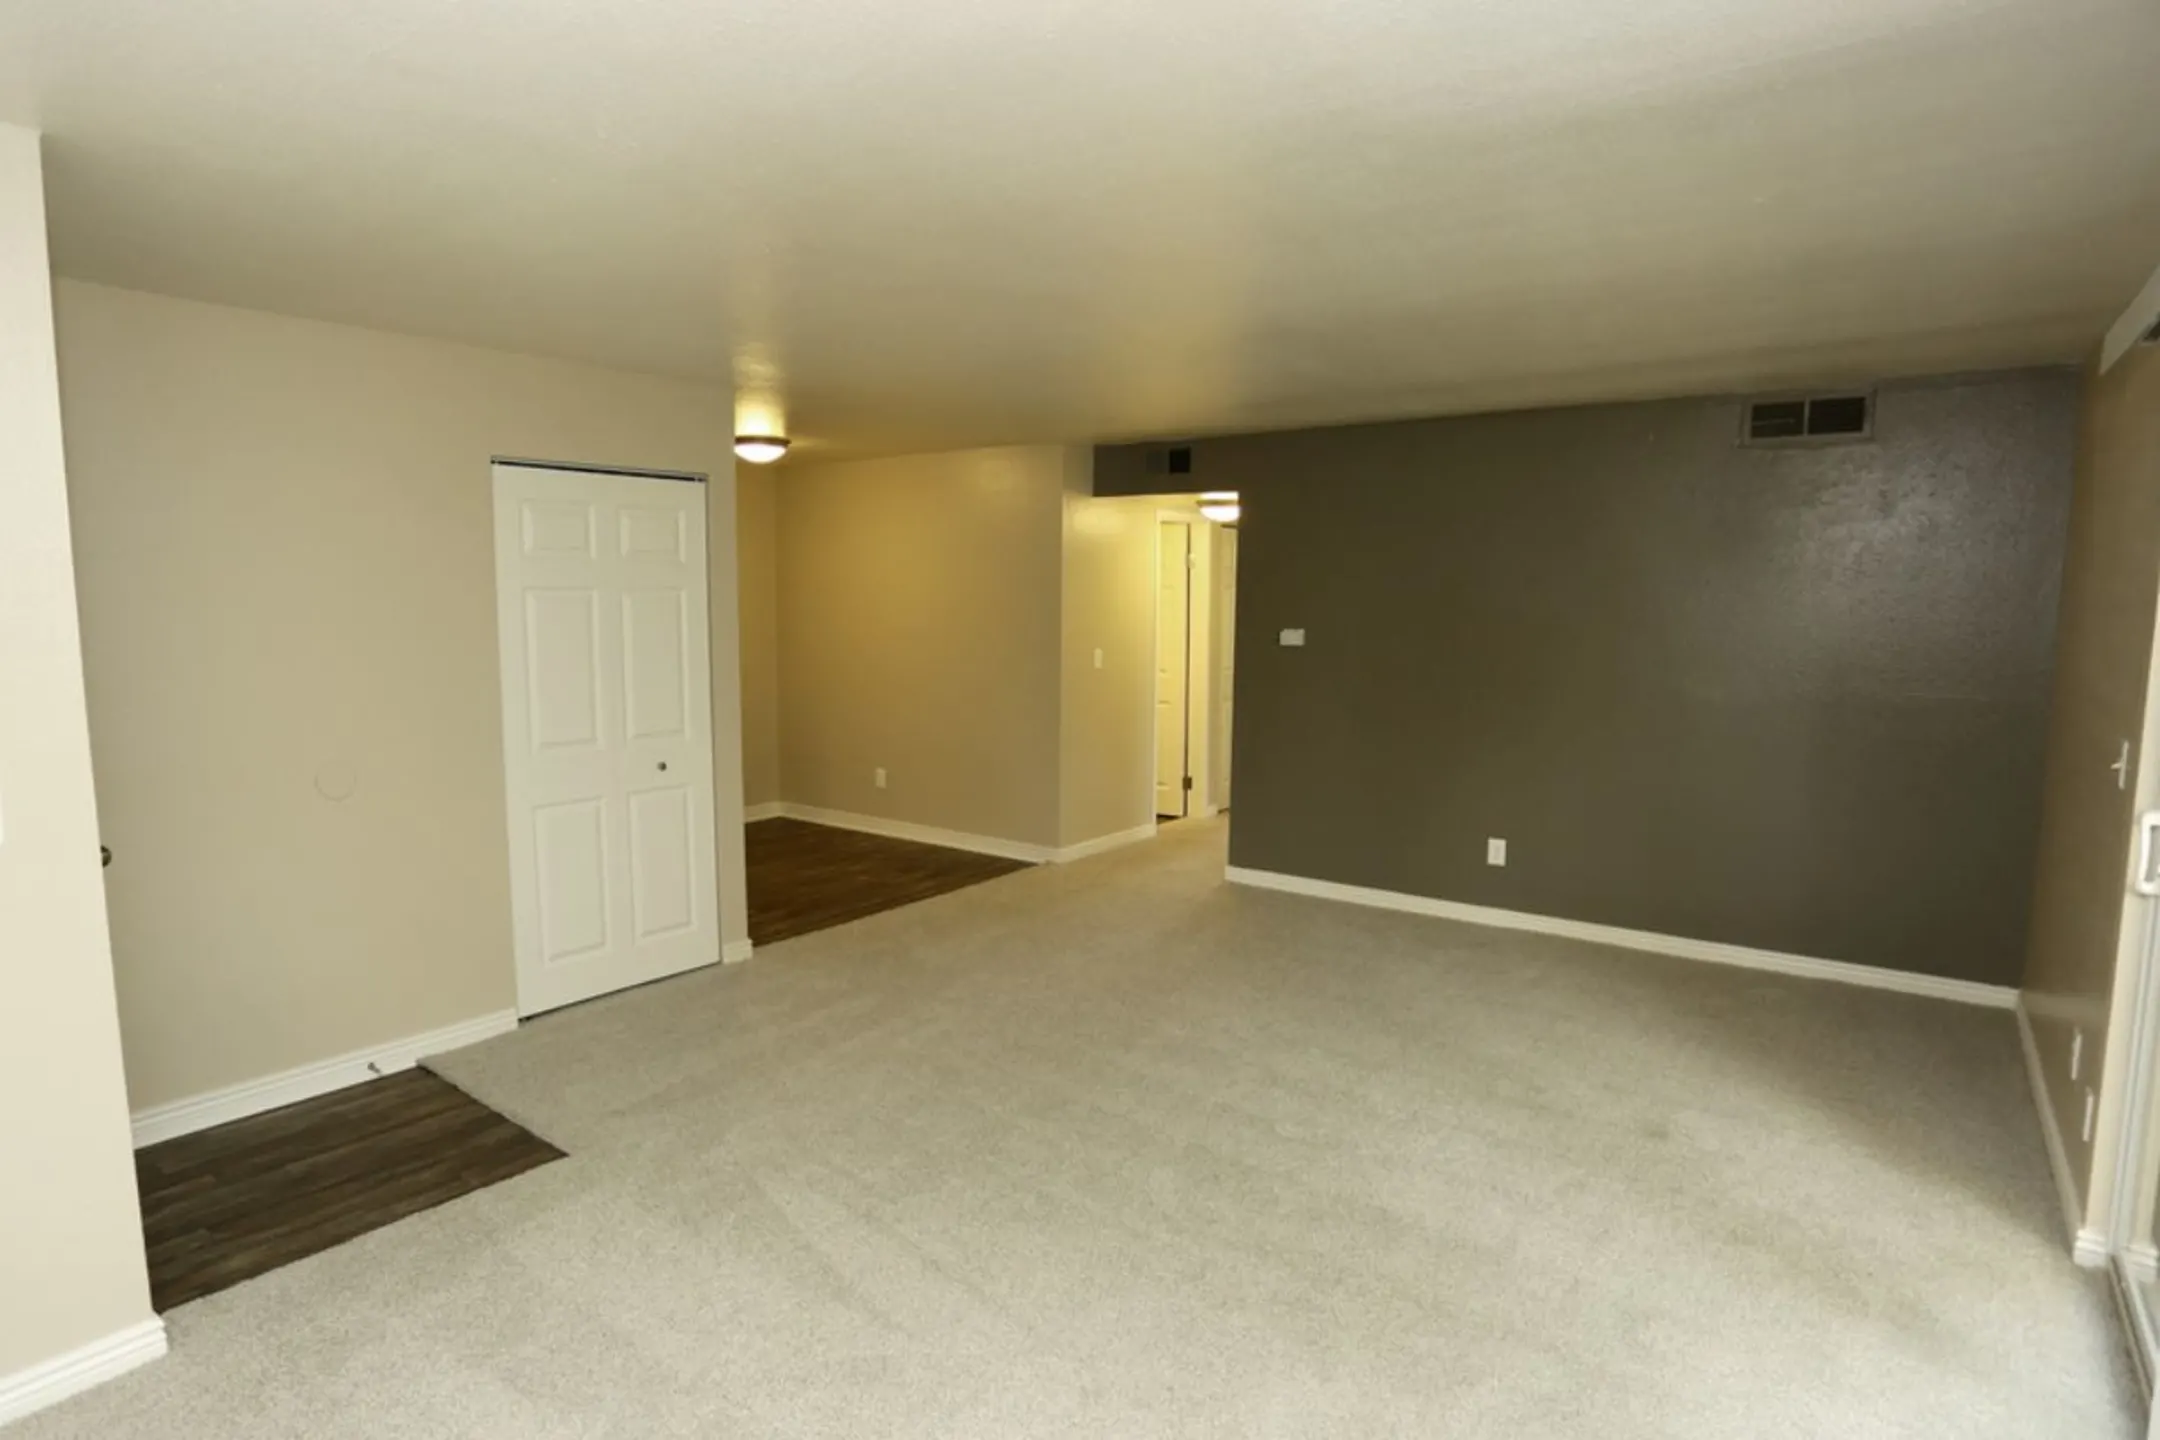 Living Room - Aspenleaf Apartments - Fort Collins, CO